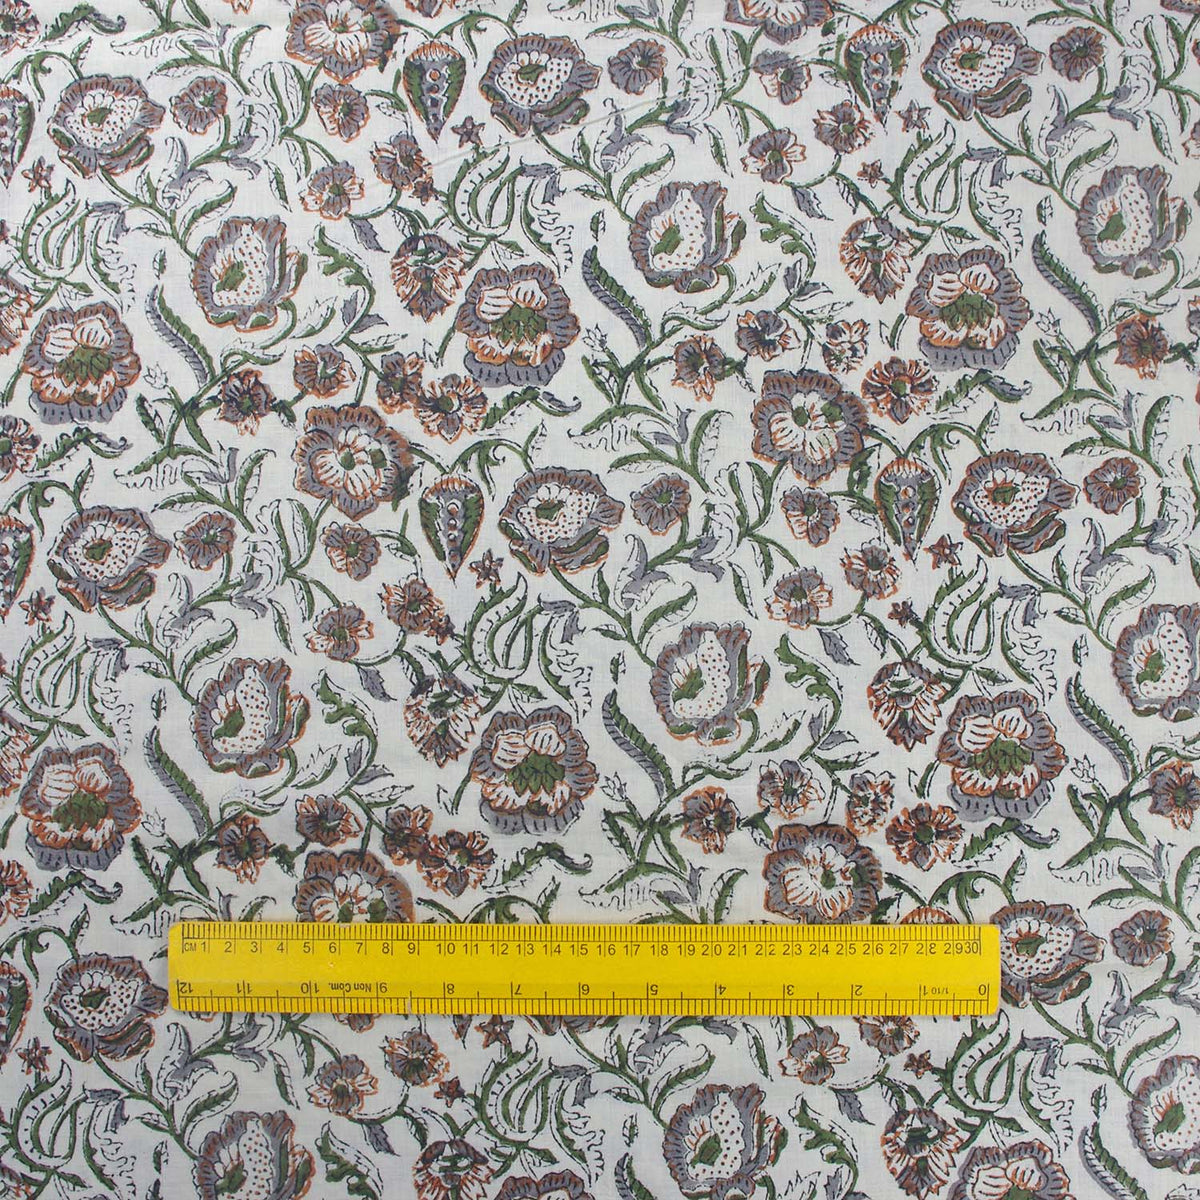 Indian Hand Block Print Braun Grün Blumen 100% Baumwolle Damen Kleid Stoff Design 144